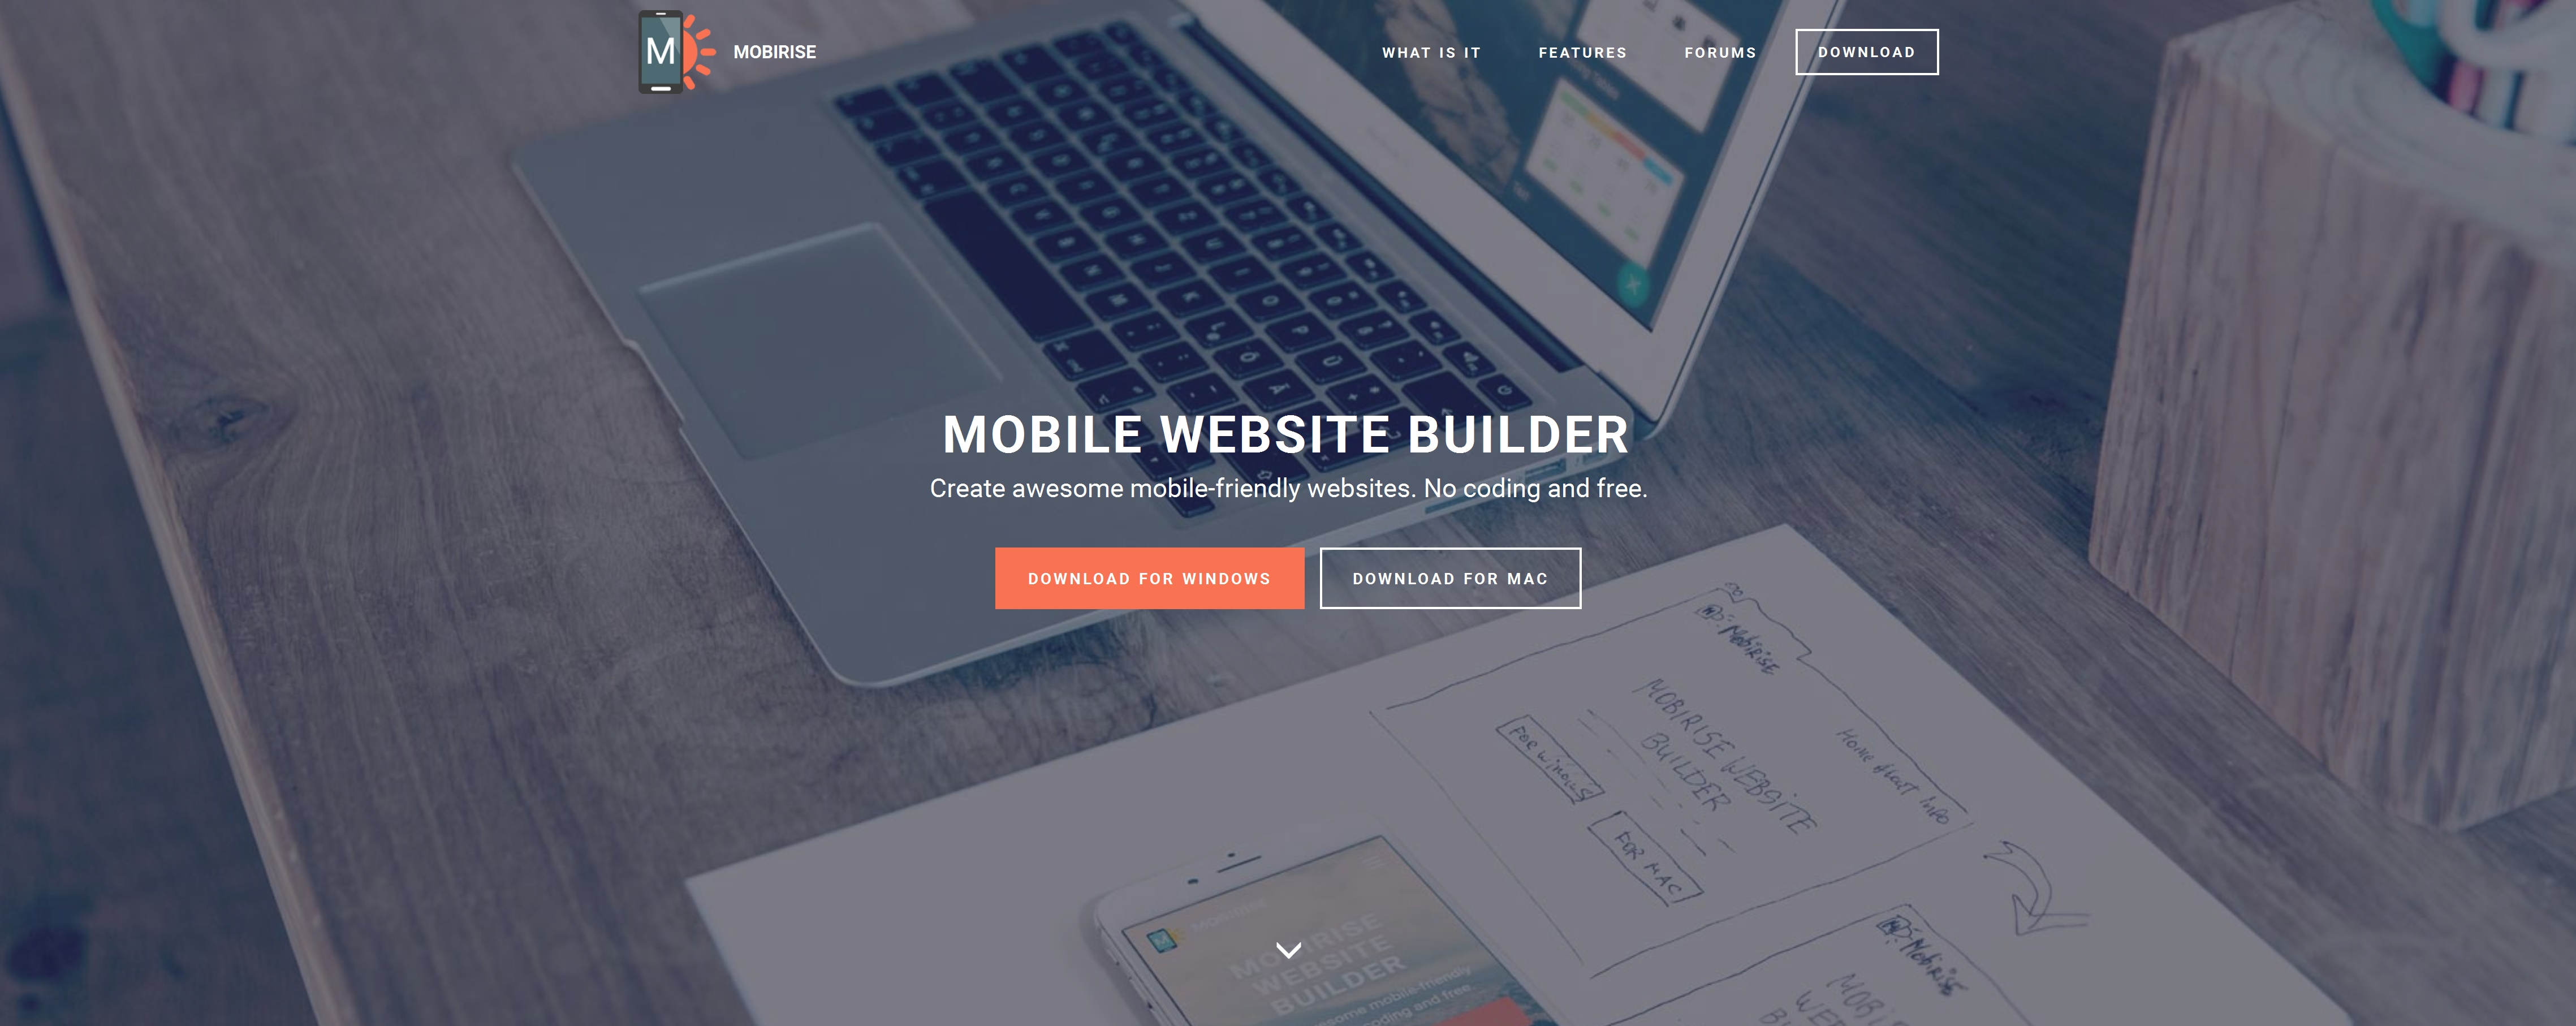  Mobile Website Maker Software